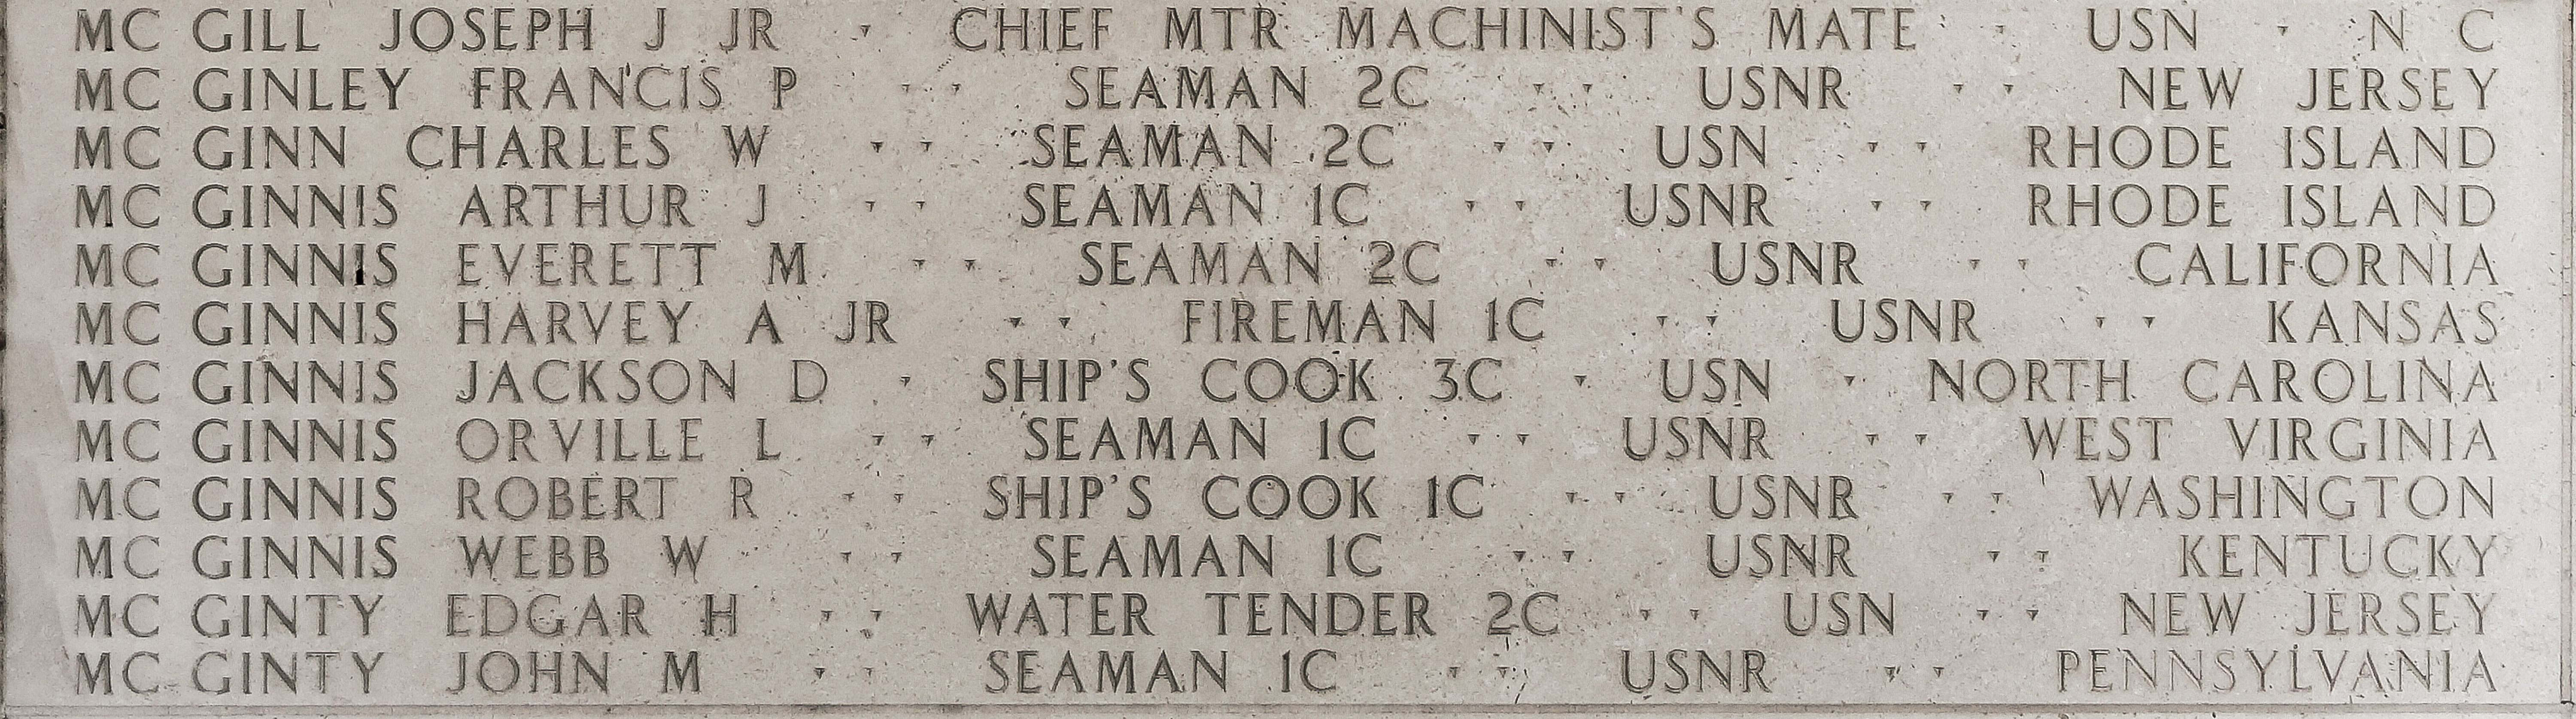 Arthur J. McGinnis, Seaman First Class